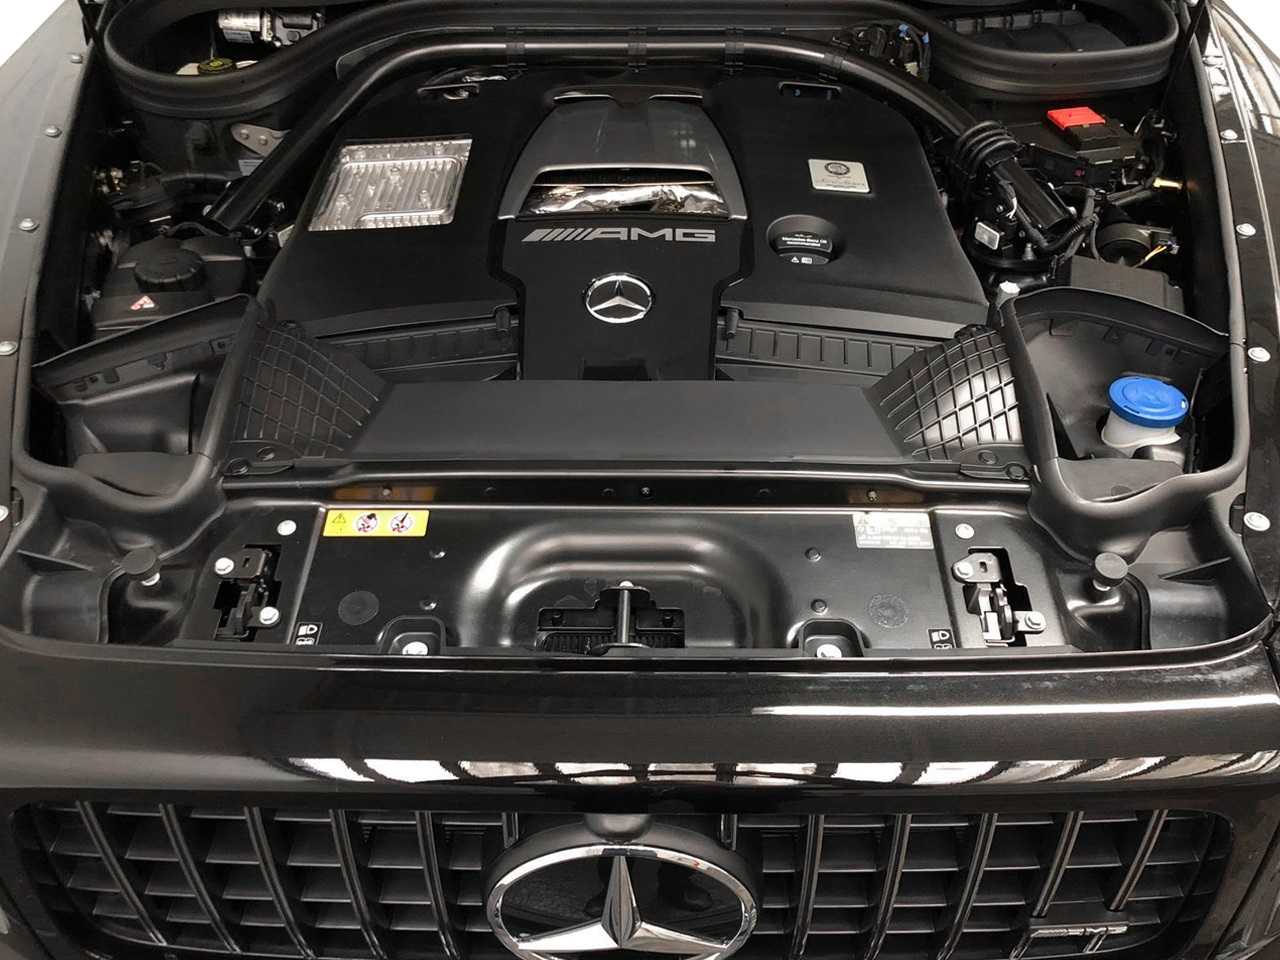 Mercedes Benz G-Wagon 63AMG engine